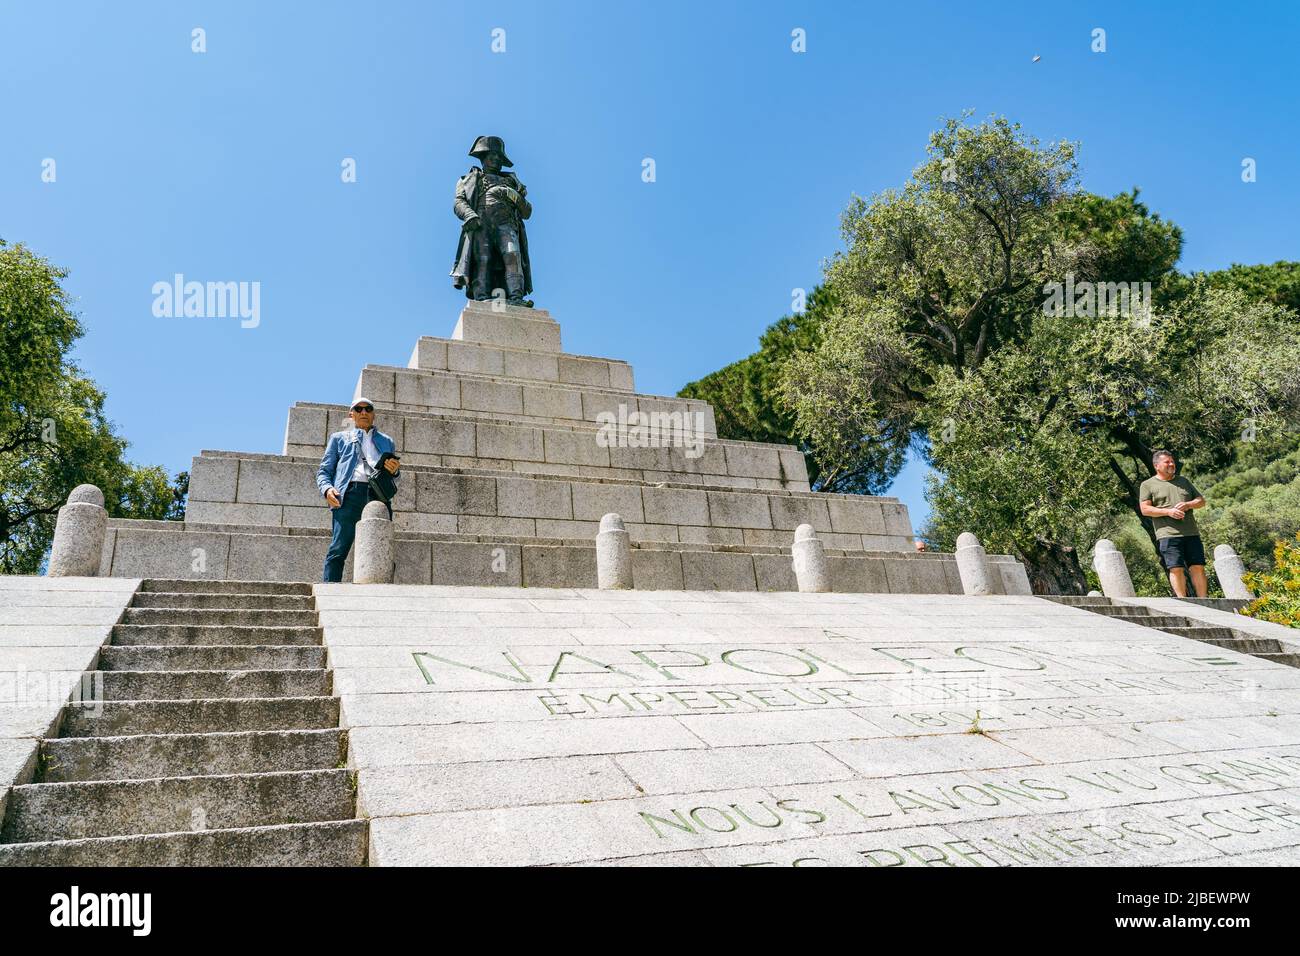 Monument commemorating Napoleon Bonaparte the 1st Emperor of France in Ajaccio, Corsica Stock Photo